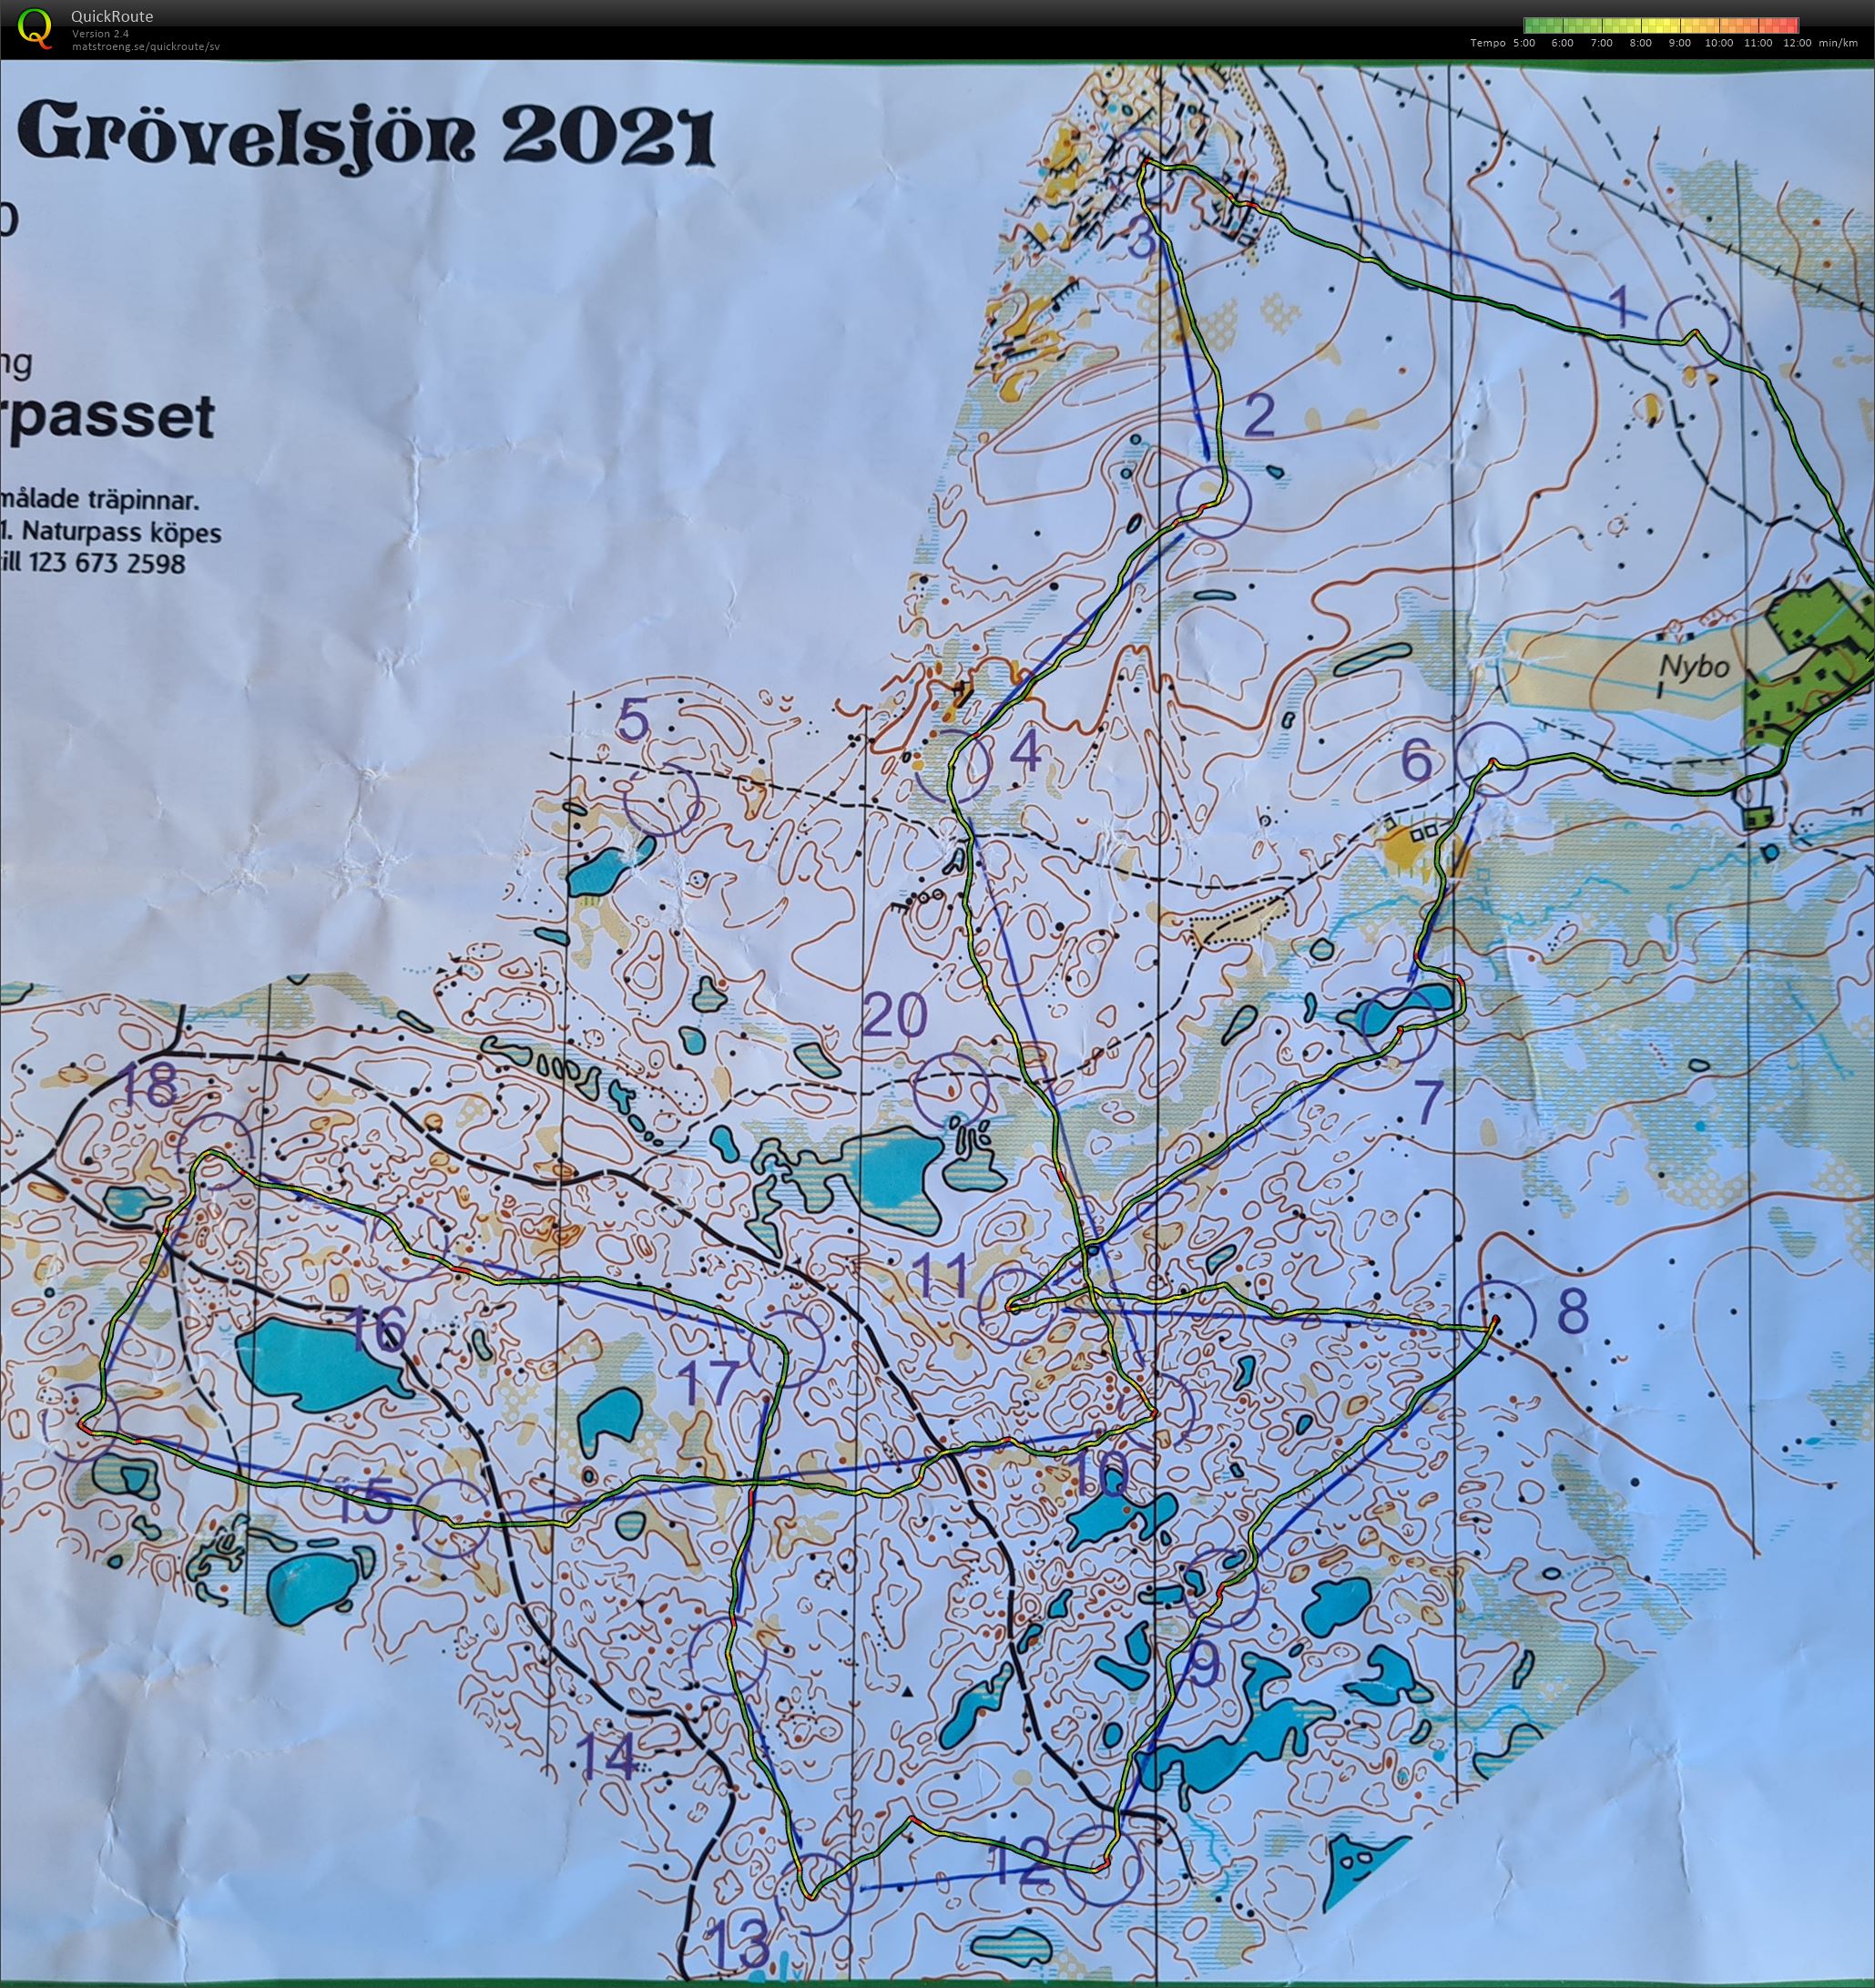 Grövelsjön: Naturpasset Nybo (28/06/2021)